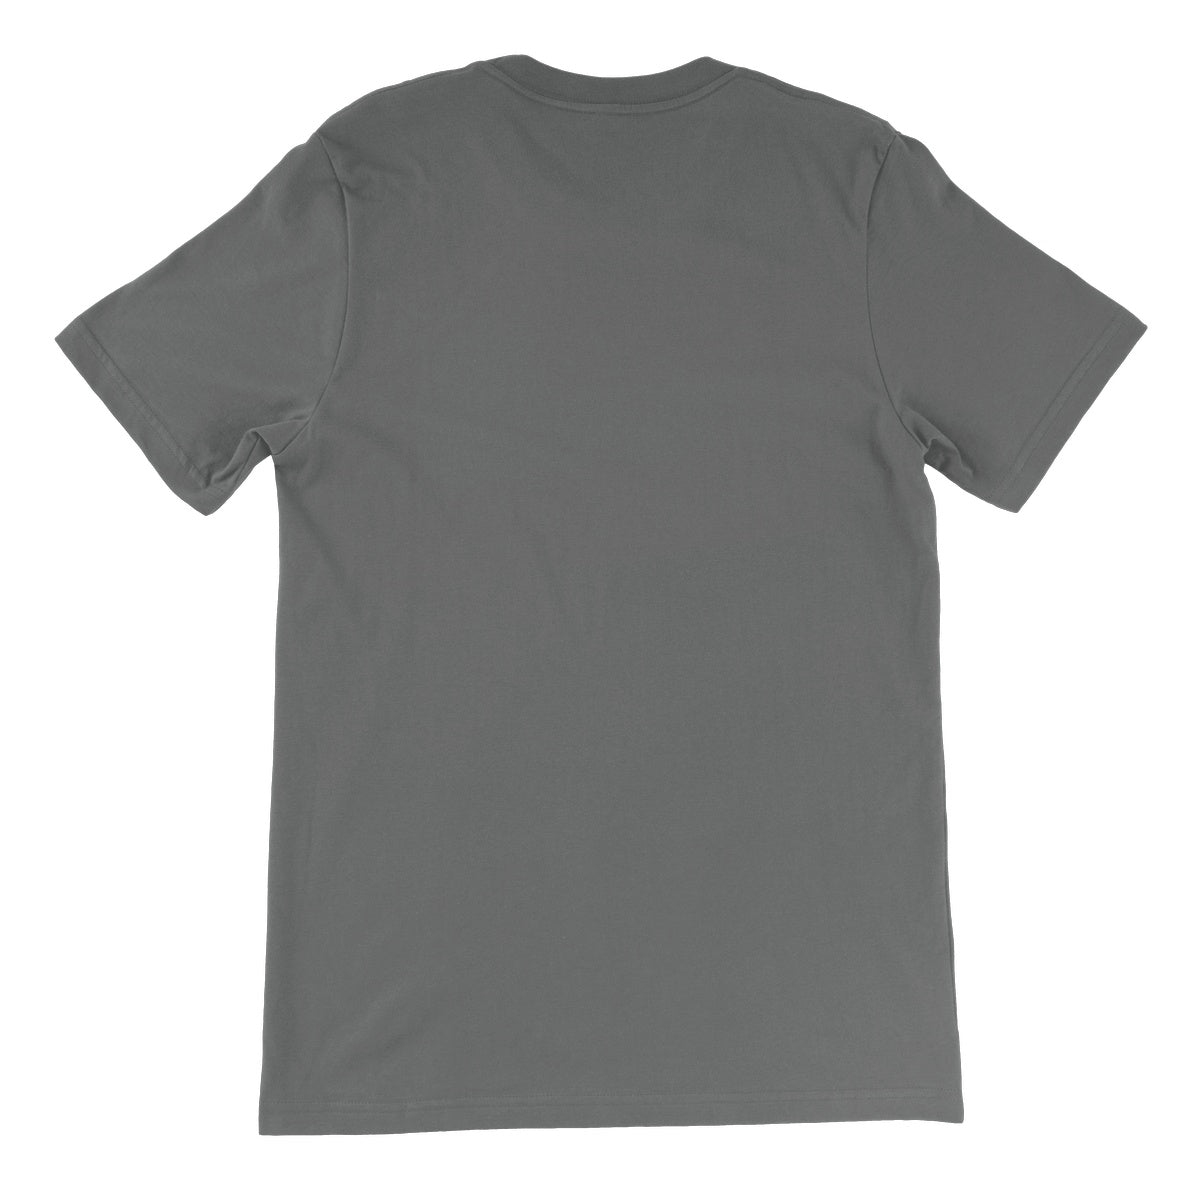 AQUA B&W - 02 - Jellyfish - Unisex Fine Jersey T-Shirt